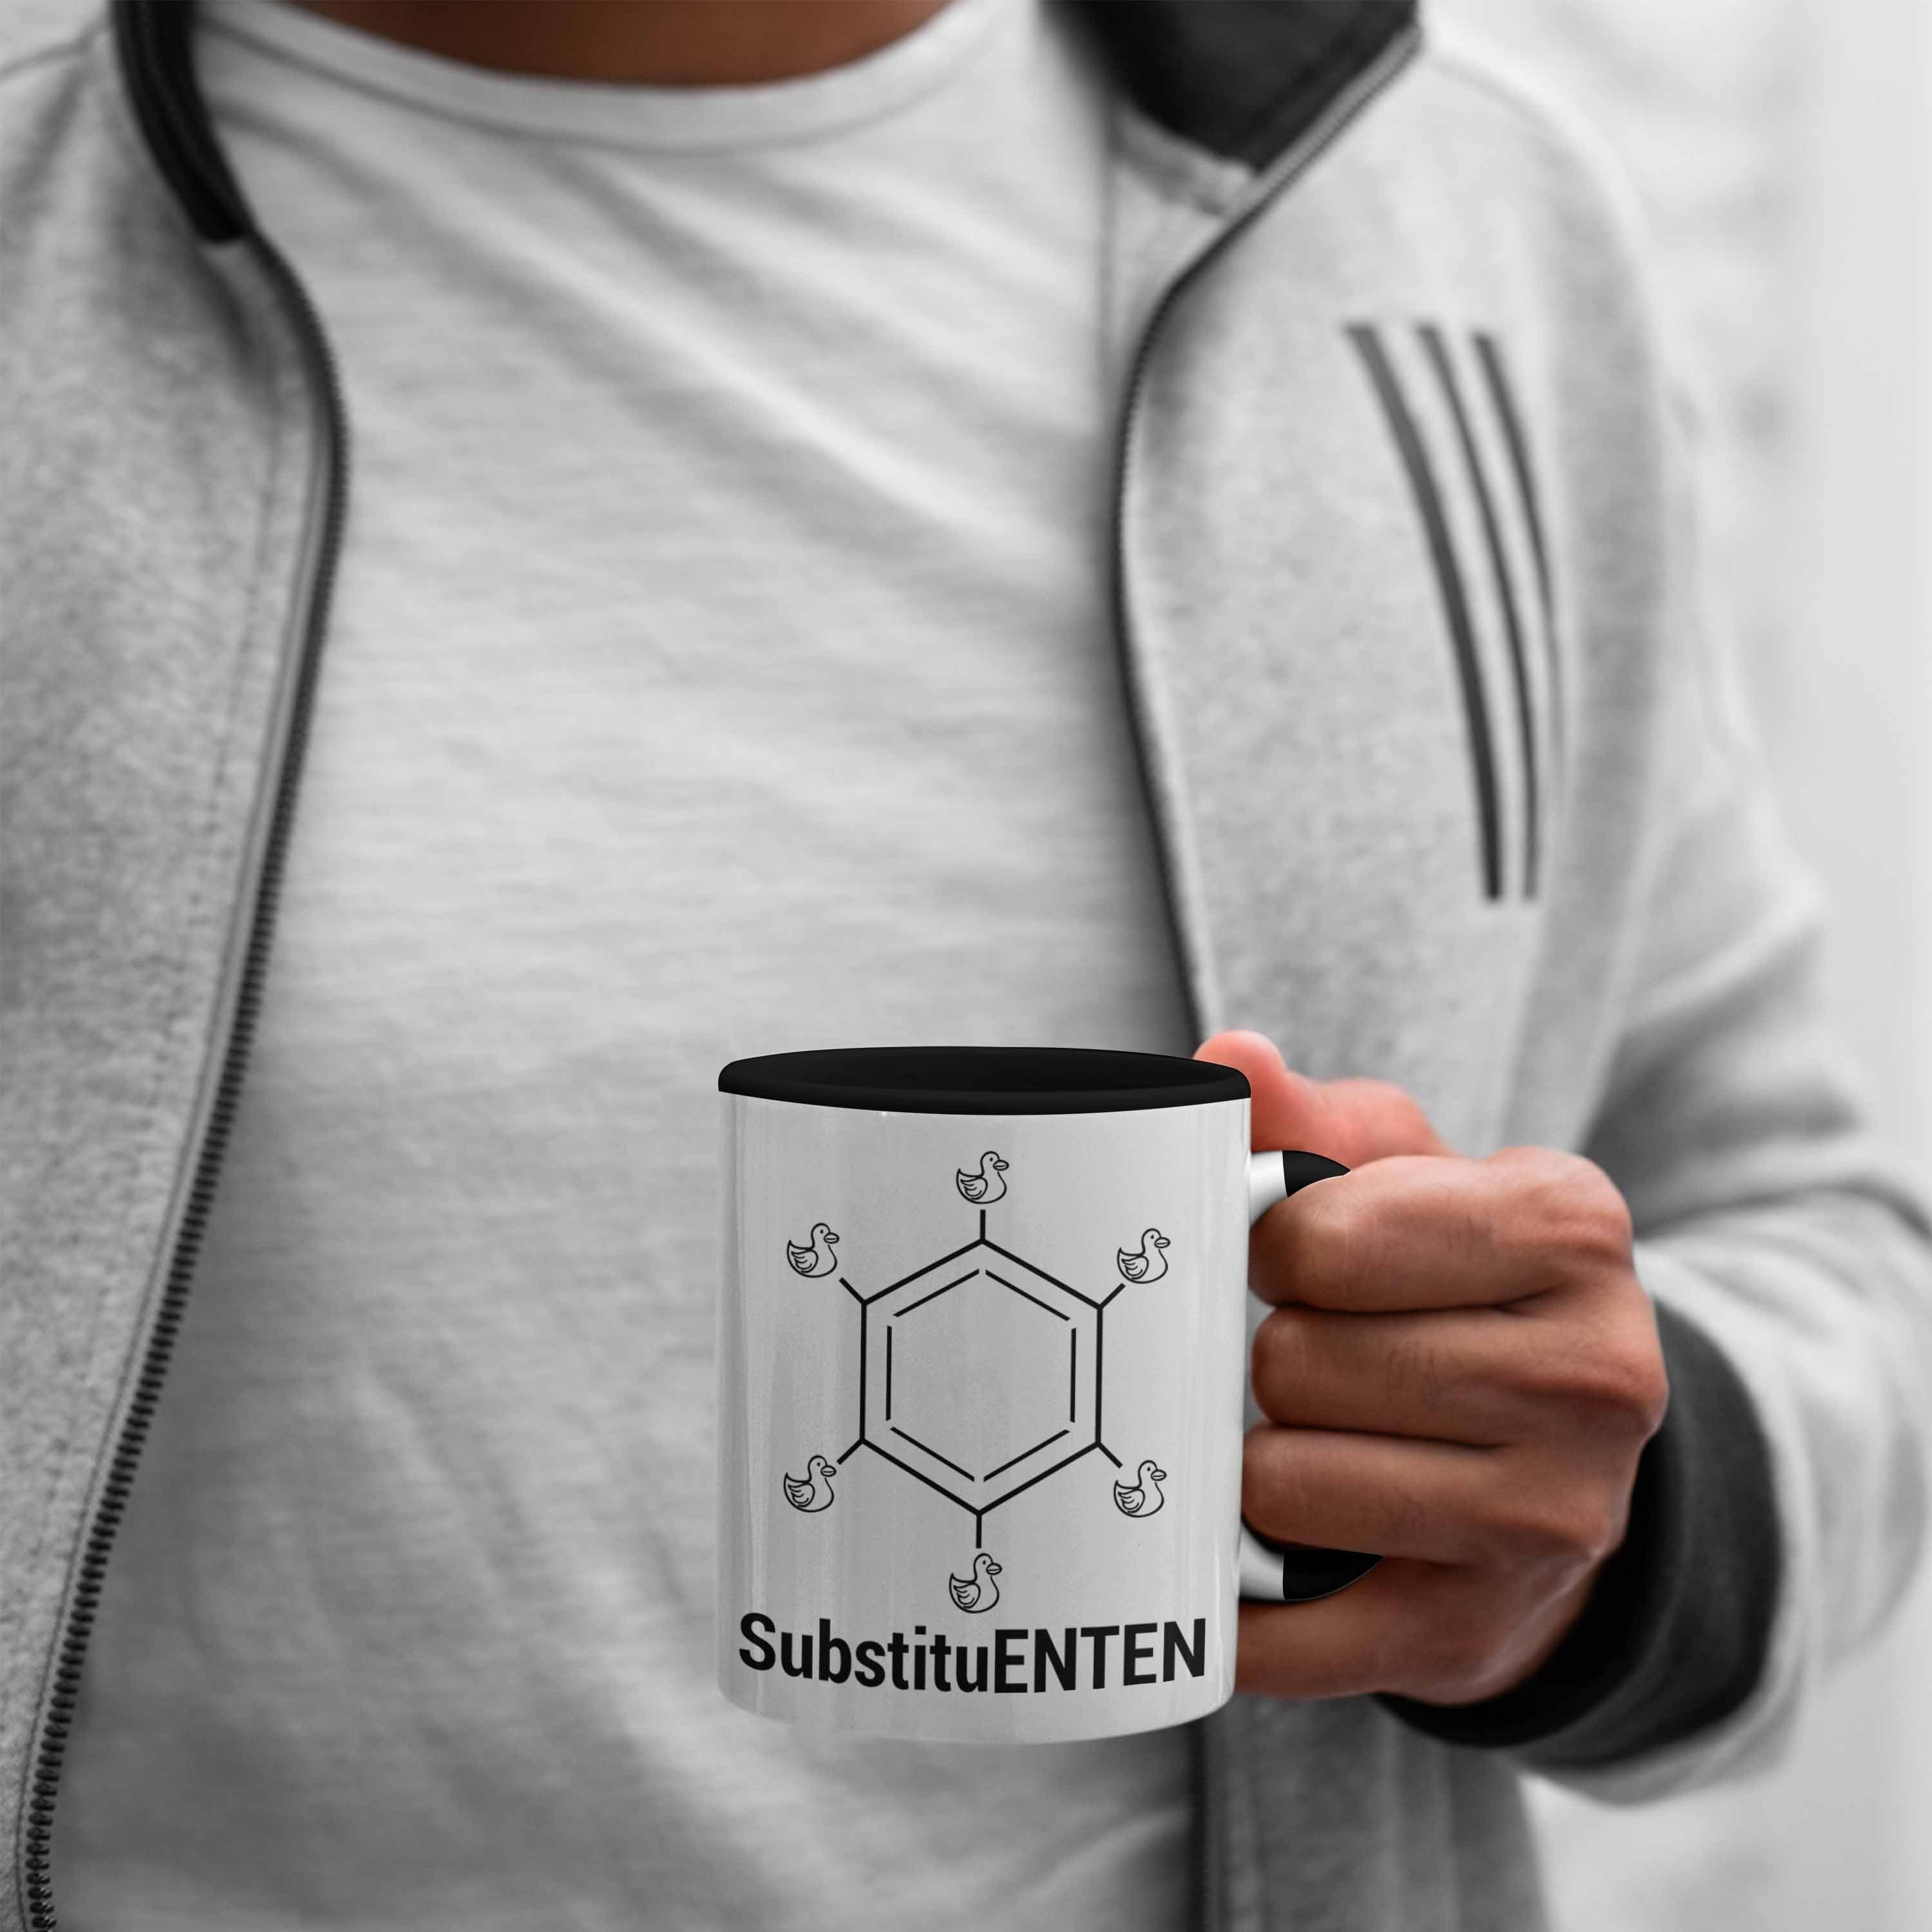 Trendation Tasse Chemie Tasse Ente Chemie SubstituENTEN Organische Chemiker Schwarz Kaffee Witz